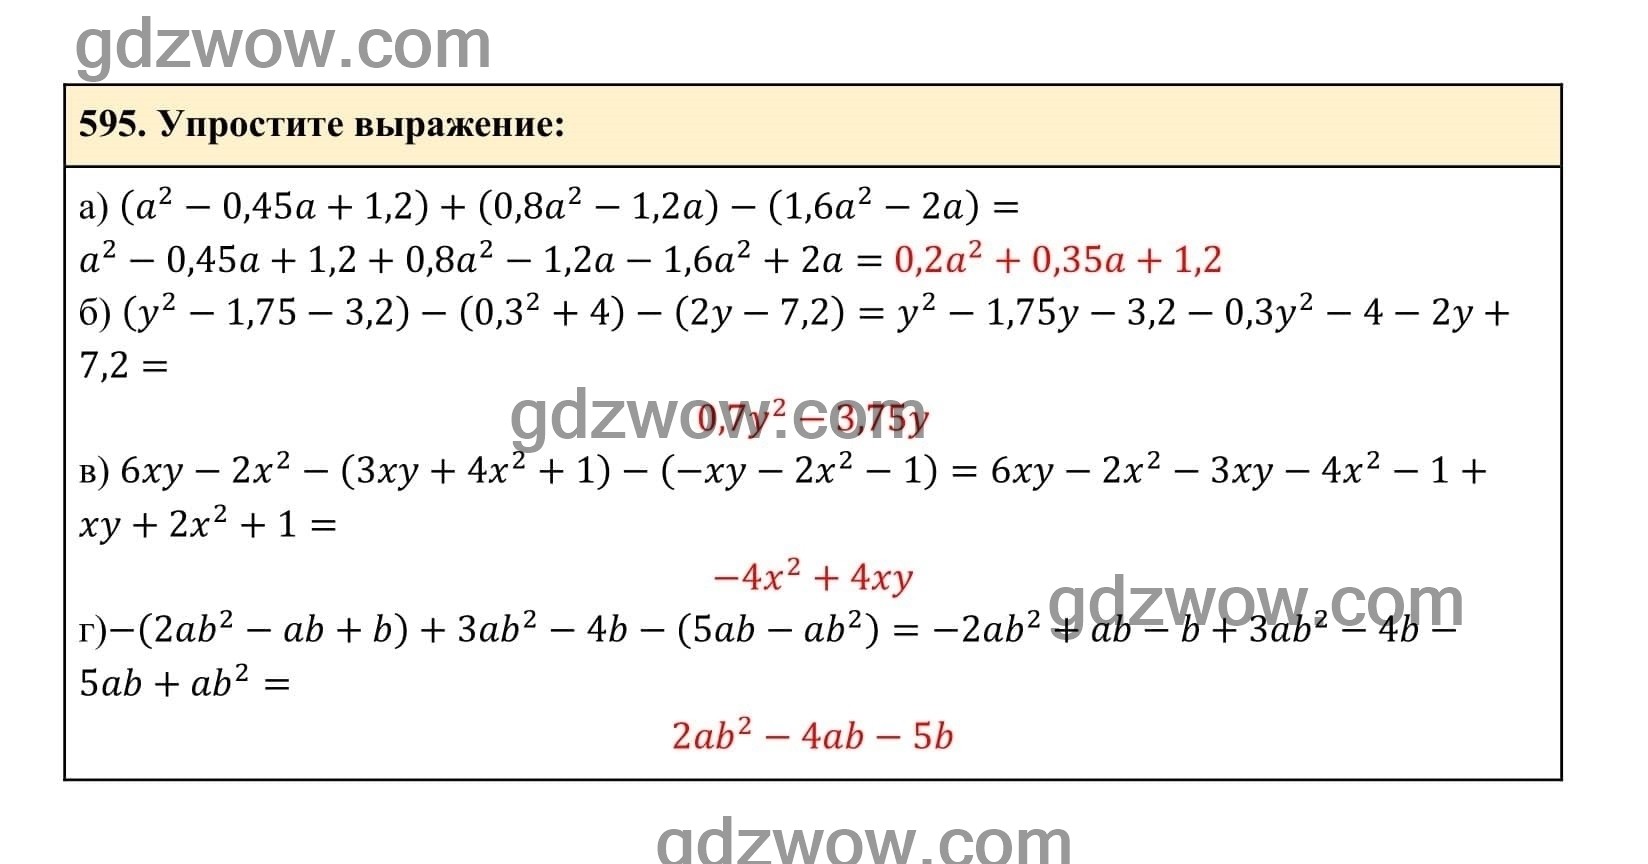 Упражнение 595 - ГДЗ по Алгебре 7 класс Учебник Макарычев (решебник) - GDZwow